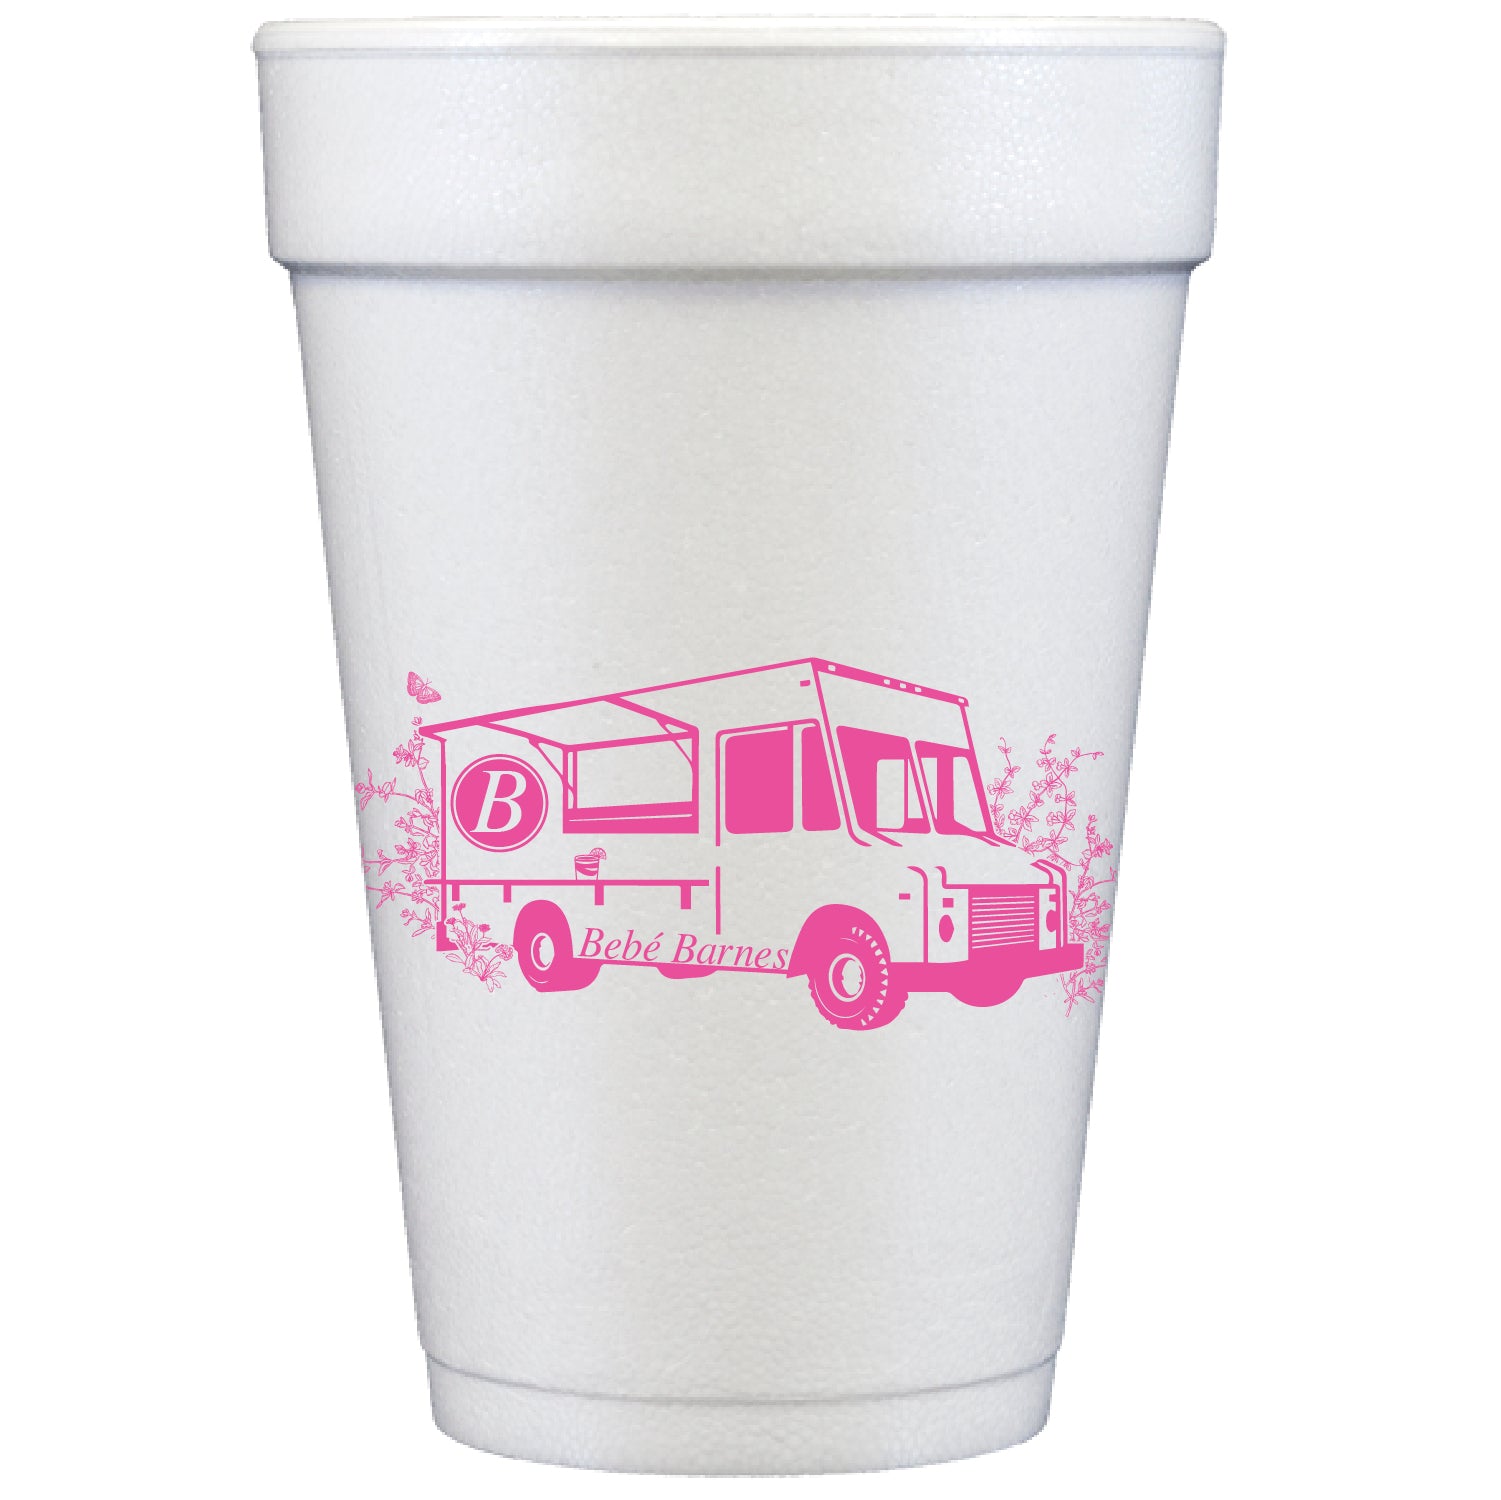 Marketing Foam Cup | Promotional Styrofoam Cups & Foam Cups